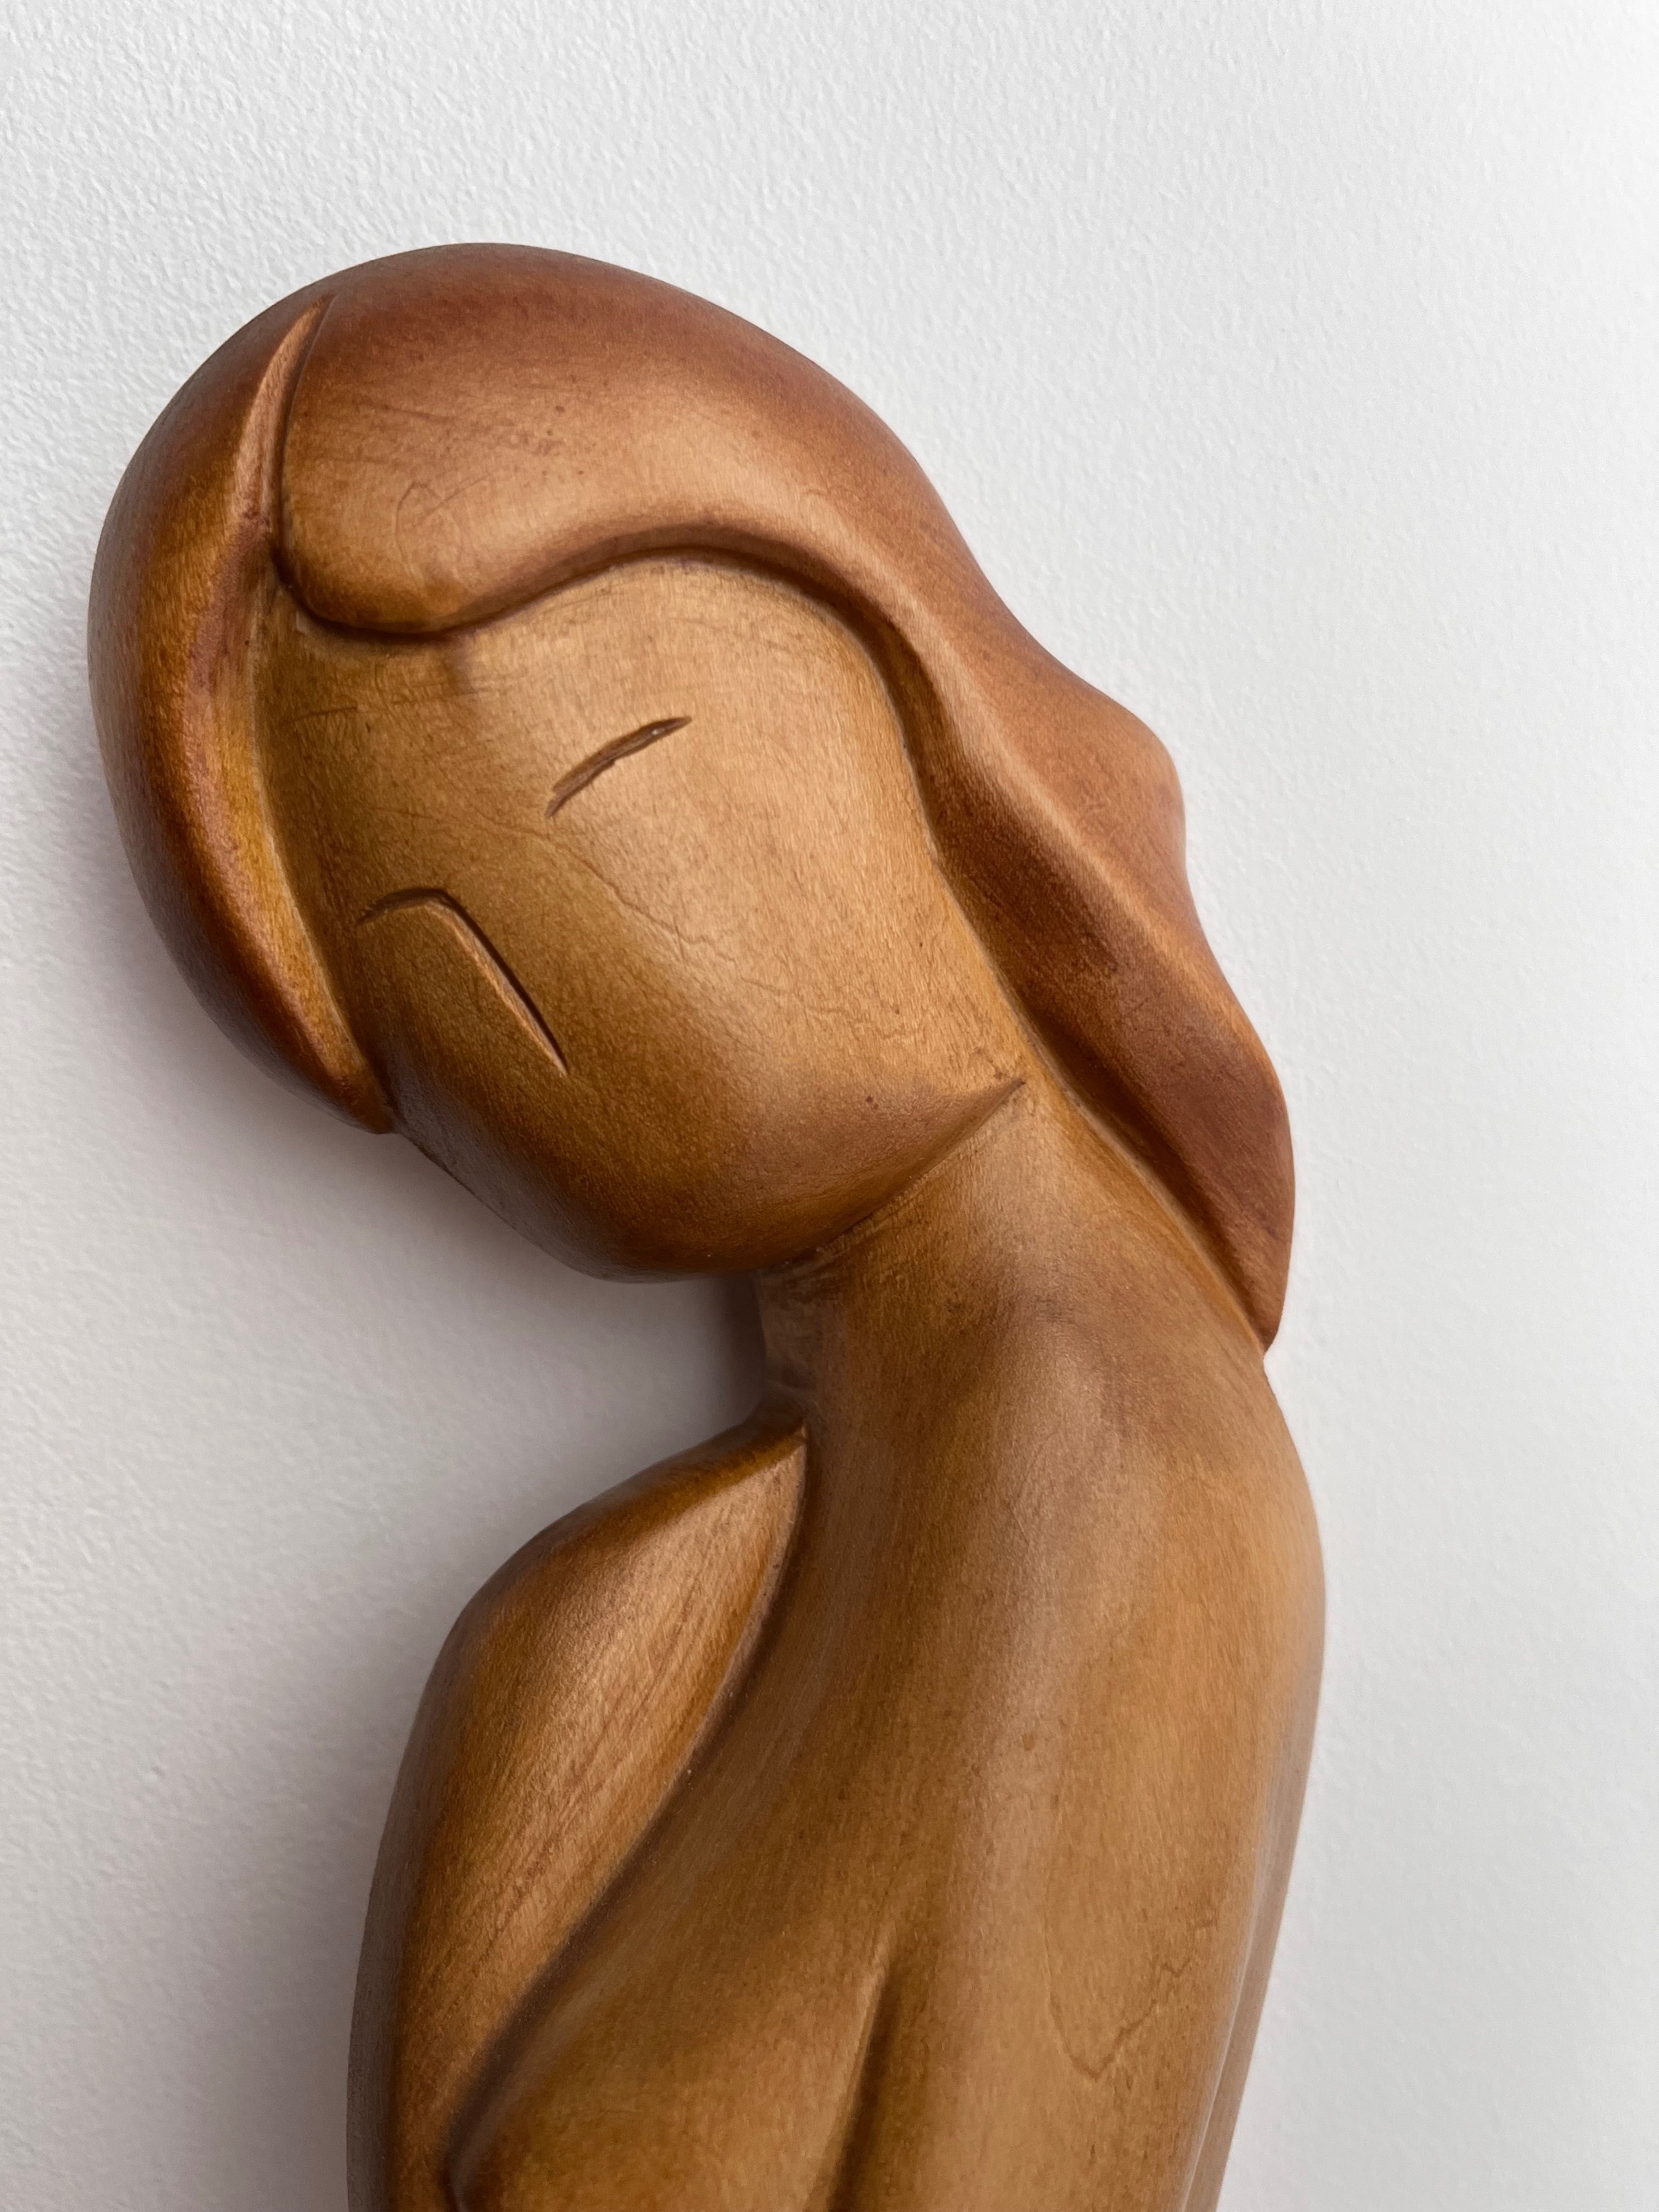 Rzeźba kobieta zmysłowa rękodzieło artystyczne